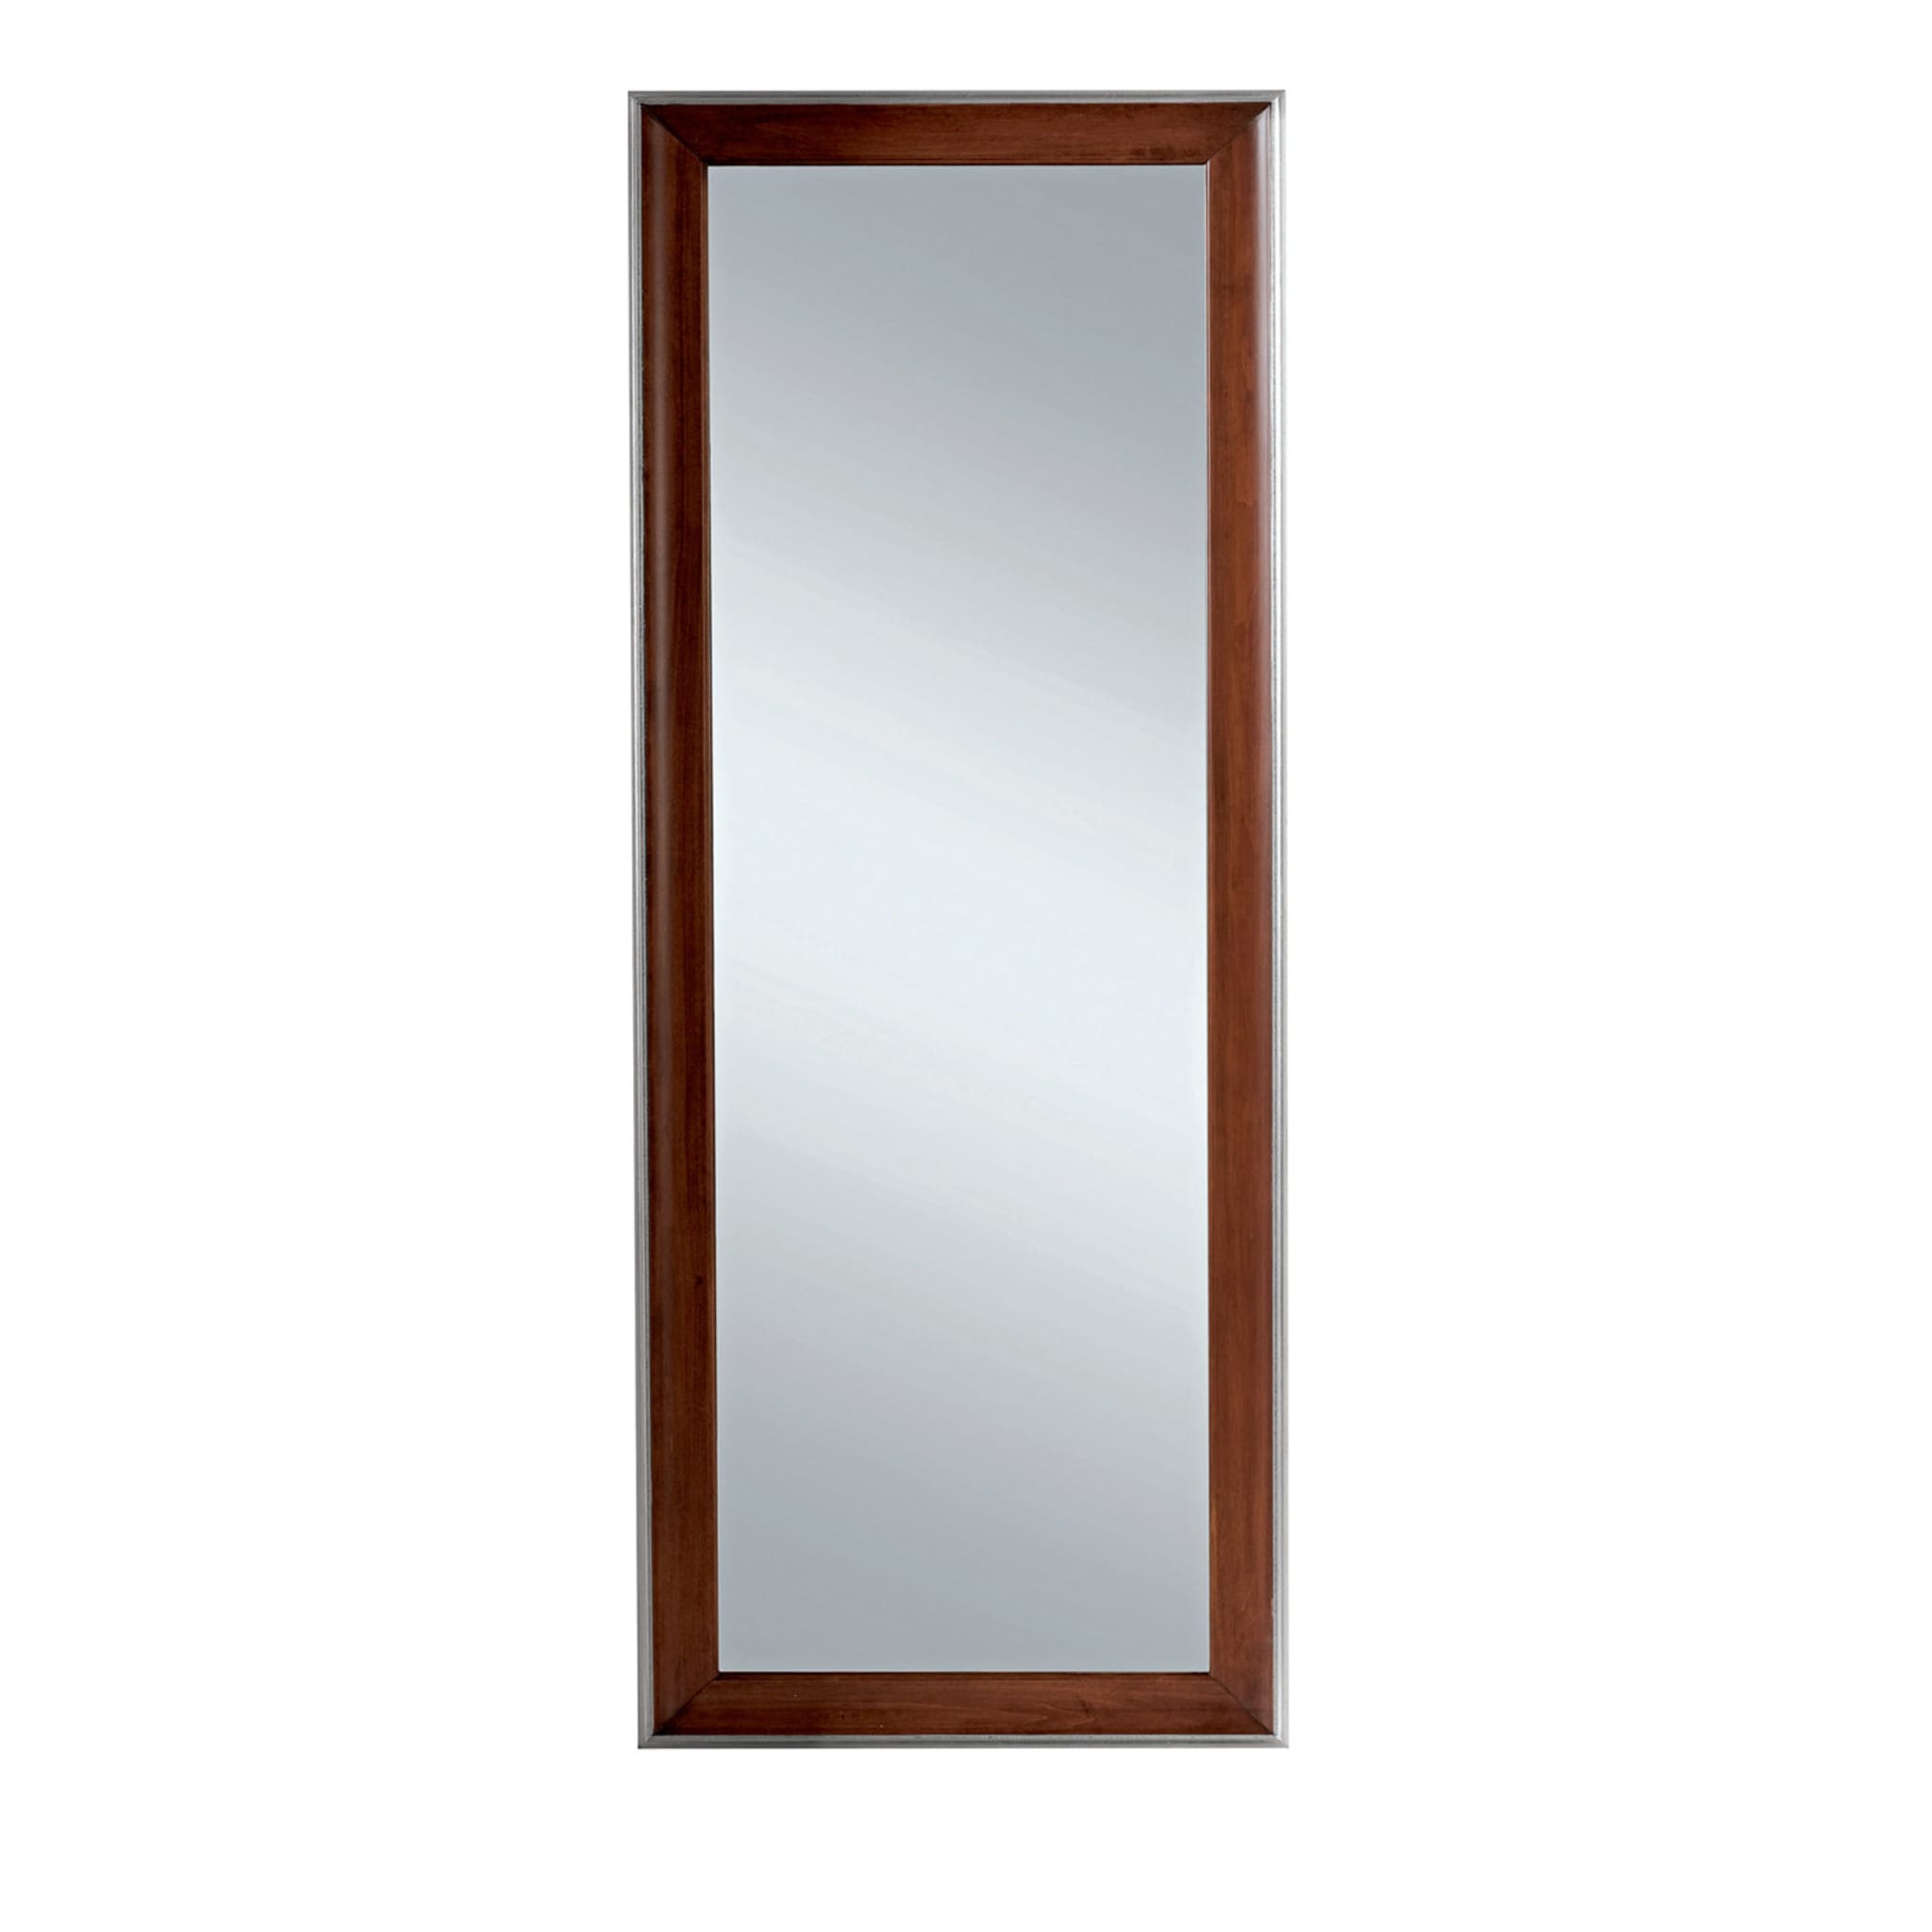 Miroir rectangulaire avec cadre en bois brun - Vue principale